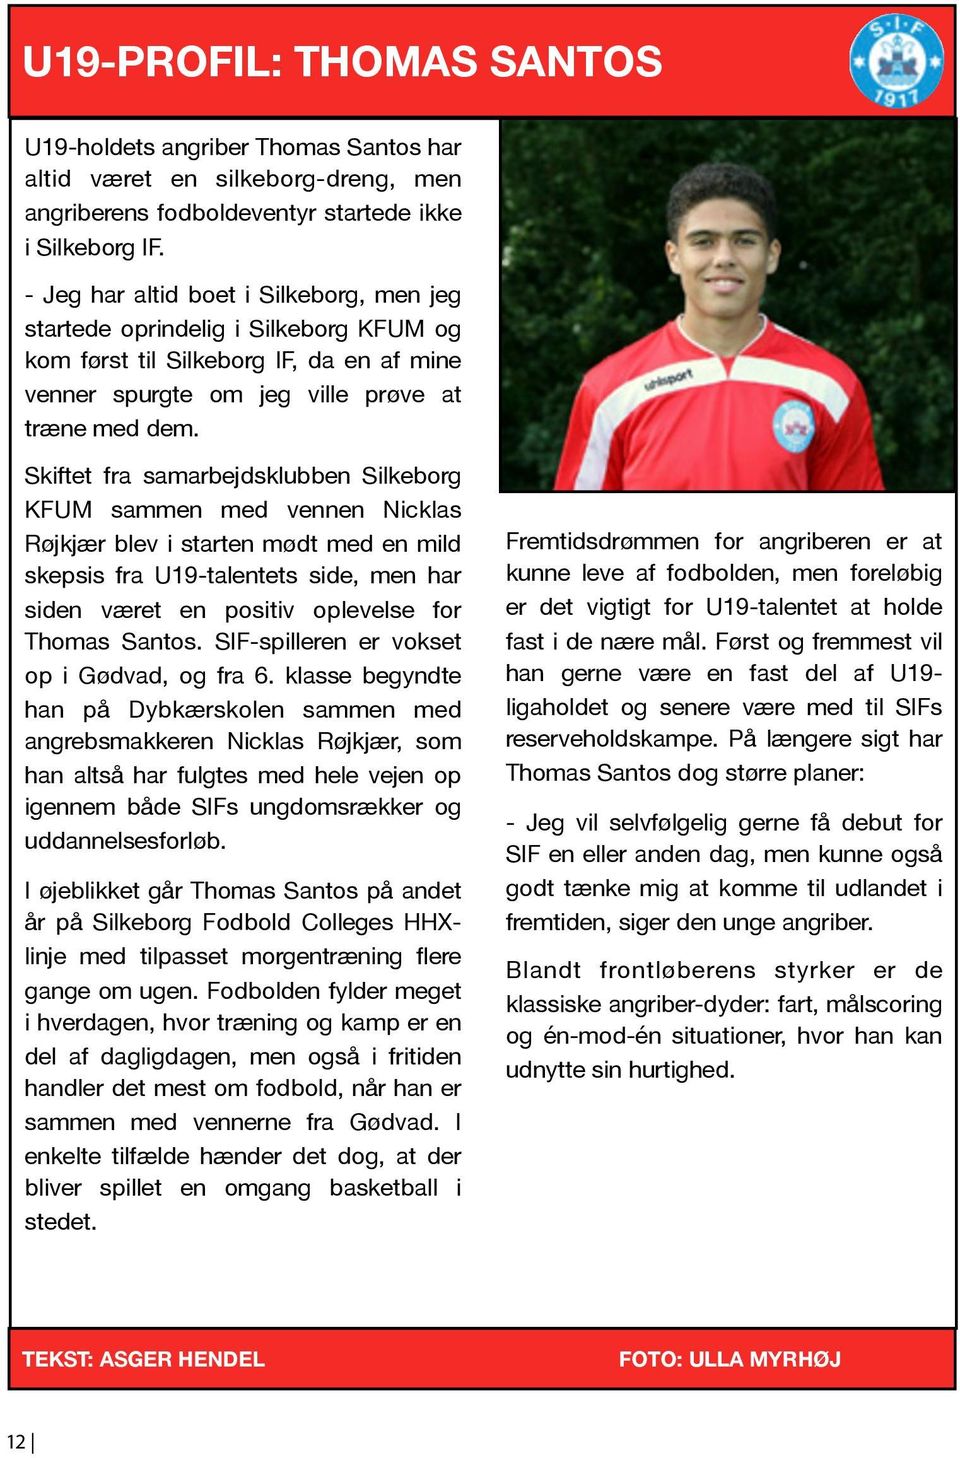 Skiftet fra samarbejdsklubben Silkeborg KFUM sammen med vennen Nicklas Røjkjær blev i starten mødt med en mild skepsis fra U19-talentets side, men har siden været en positiv oplevelse for Thomas